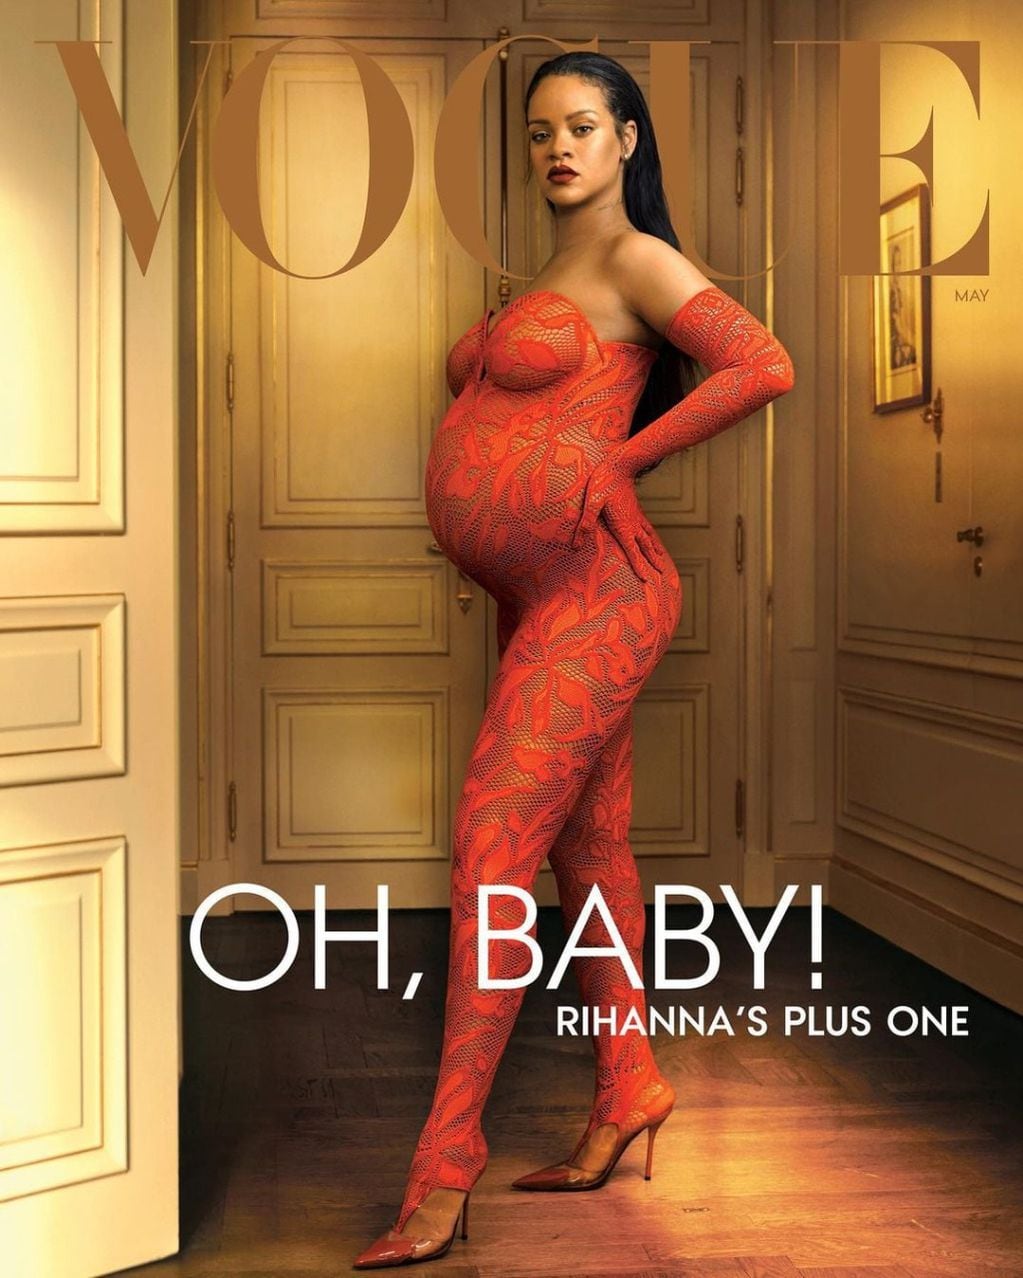 Rihanna embarazada es la tapa de mayo 2022 de Vogue.